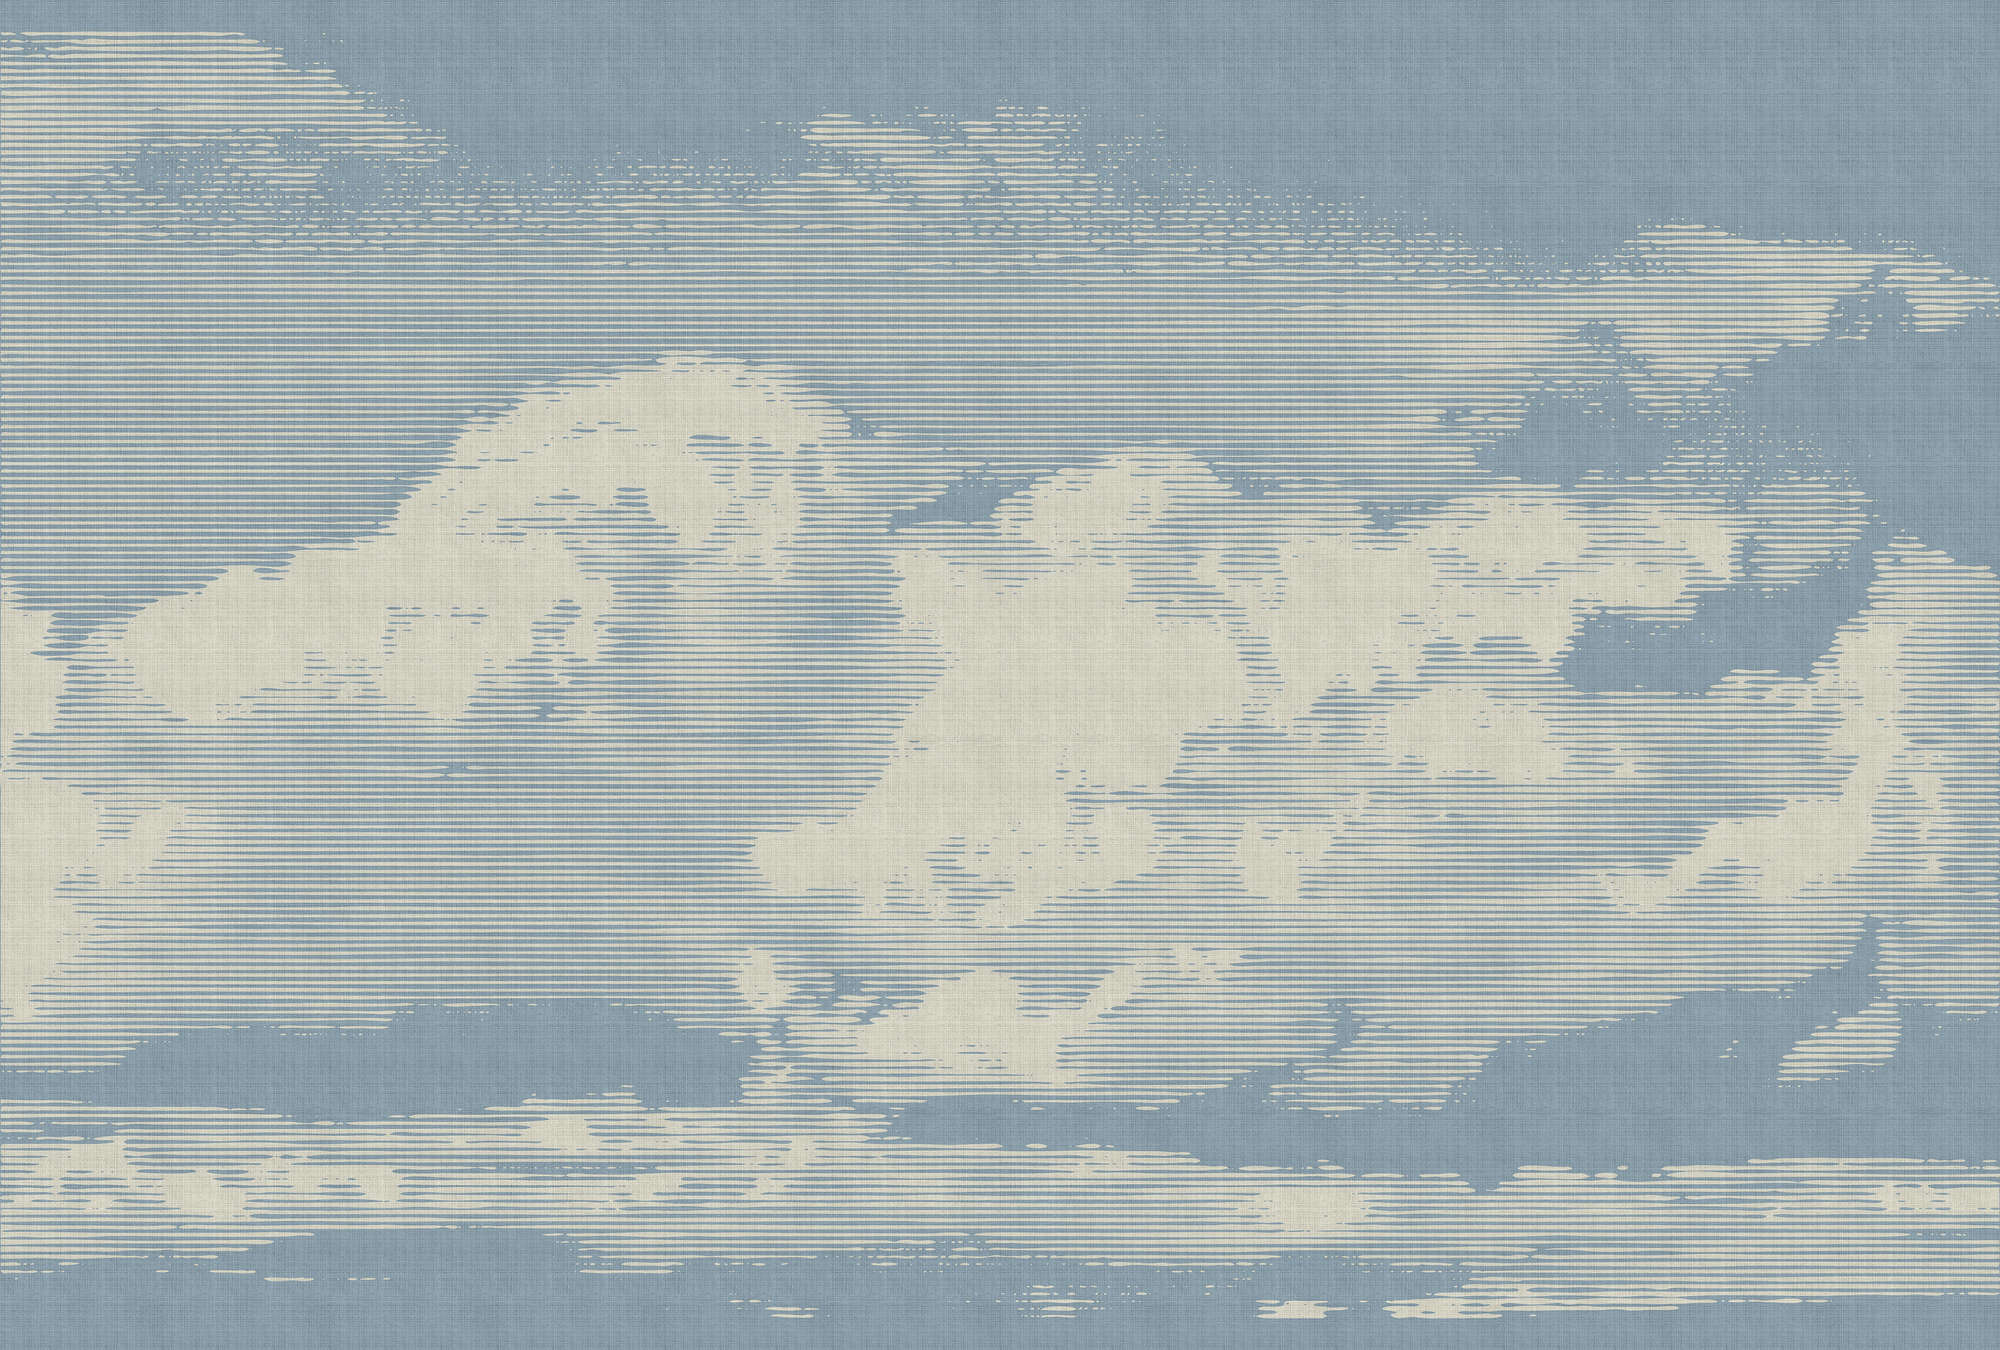             Nubes 1 - Papel pintado con motivo de nubes en estructura de lino natural - Beige, Azul | Vellón liso Premium
        